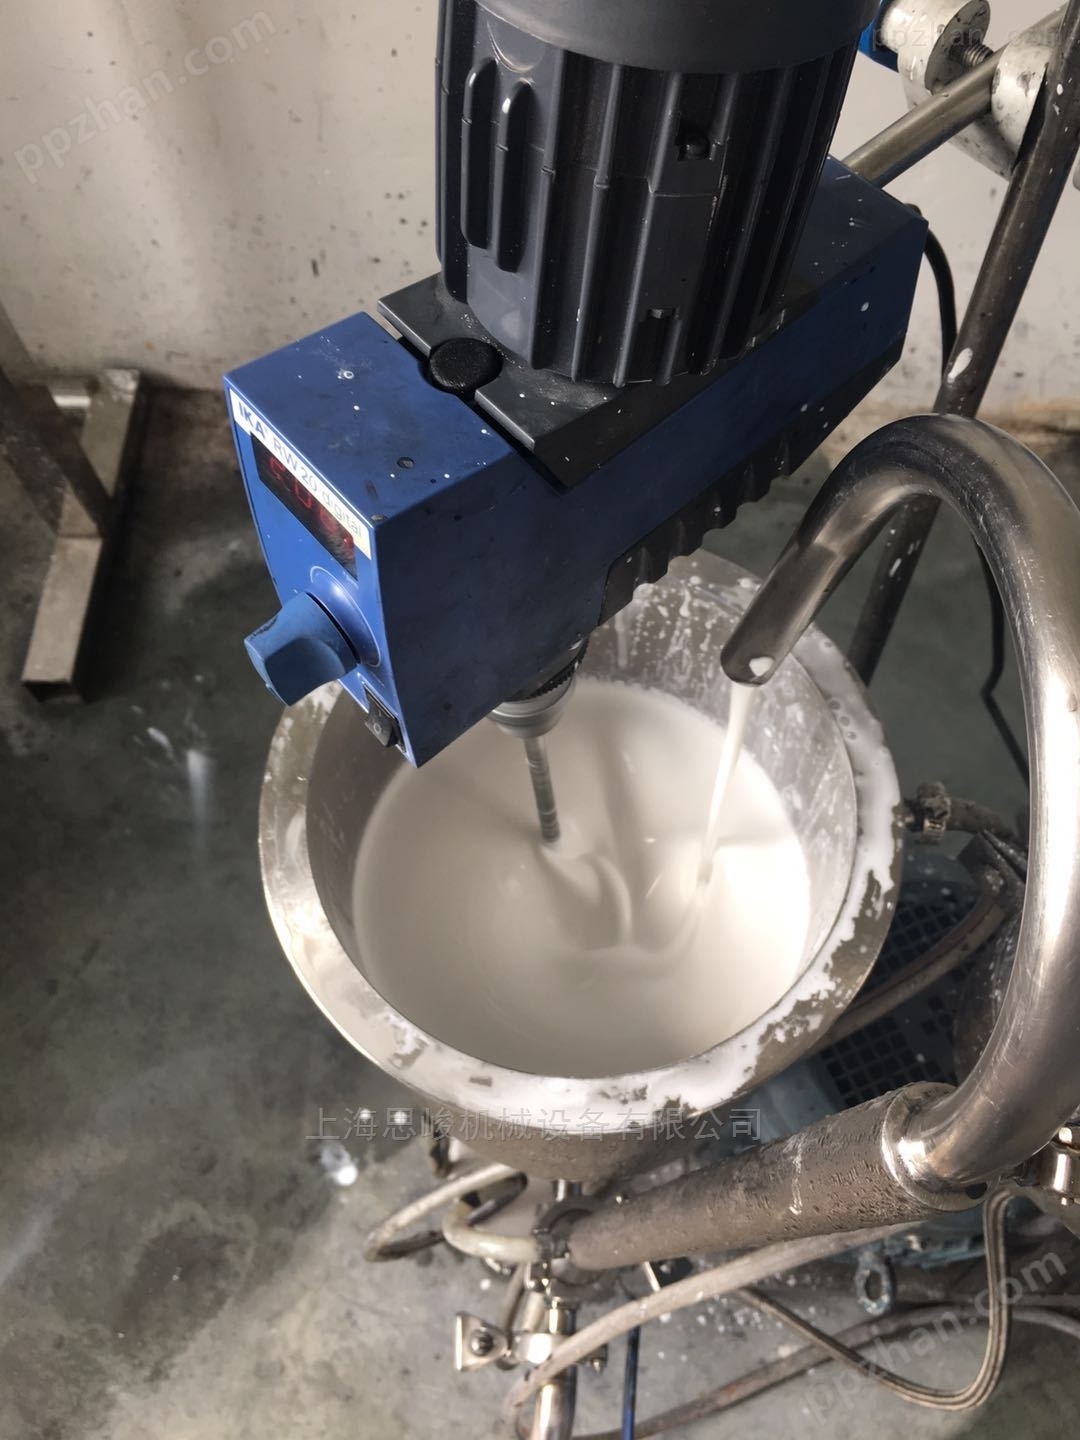 水性环氧树脂乳液剪切乳化机